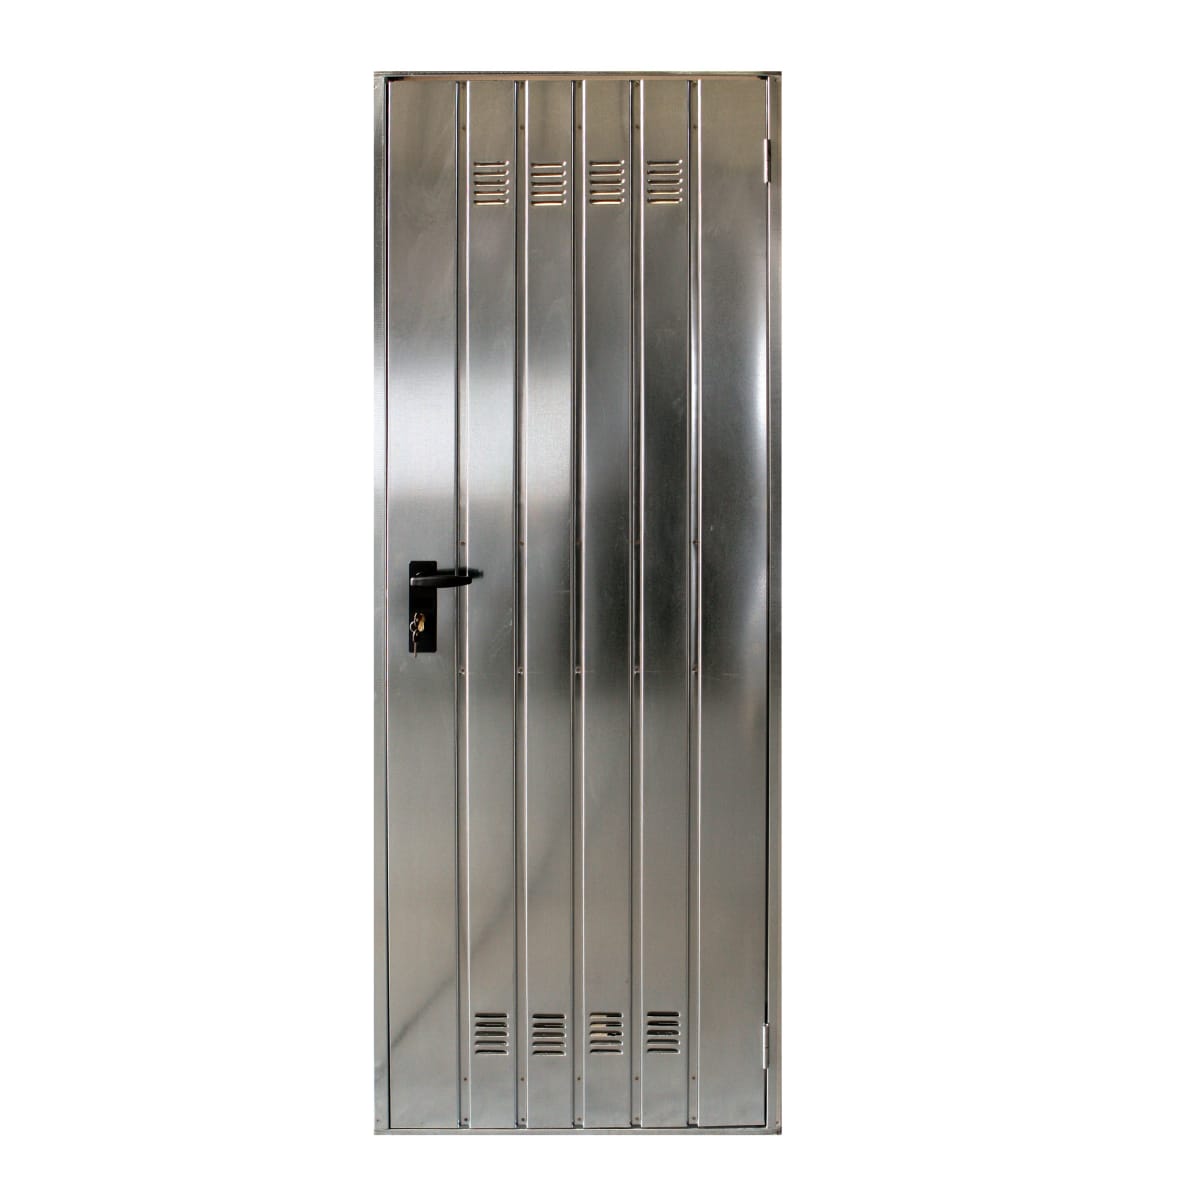 SHEET METAL SERVICE DOOR 100X200 CILIN/MAN